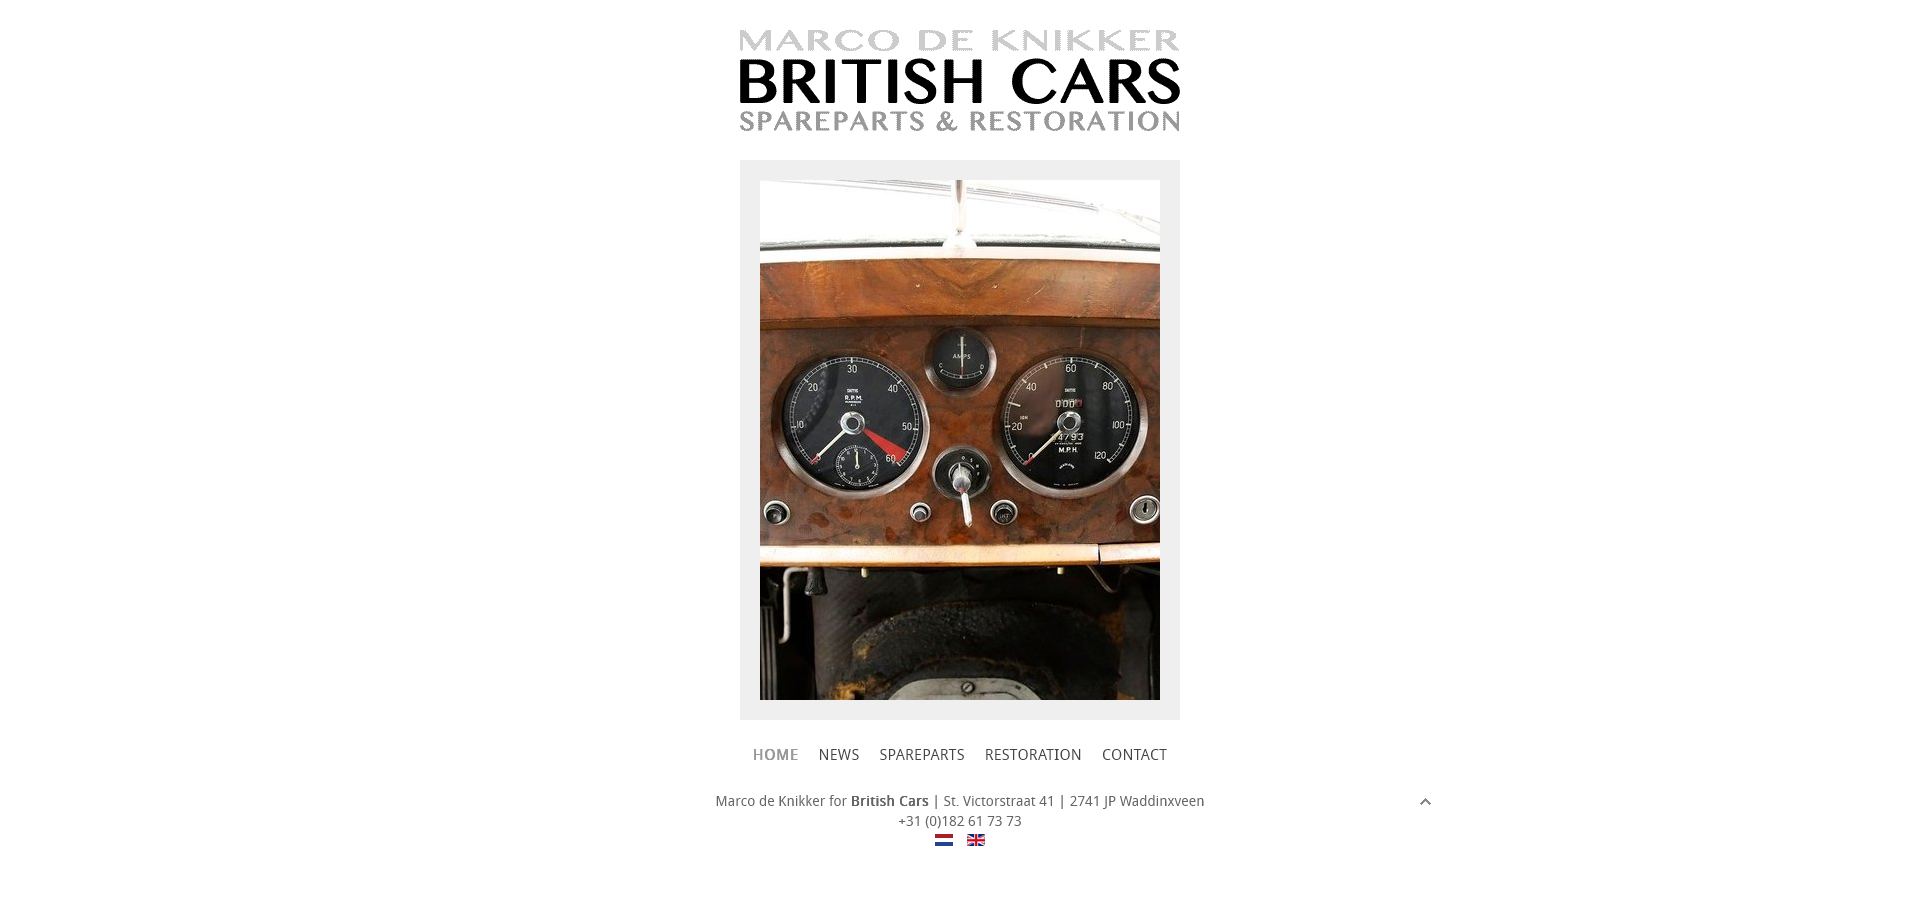 Marco de Knikker for British Cars